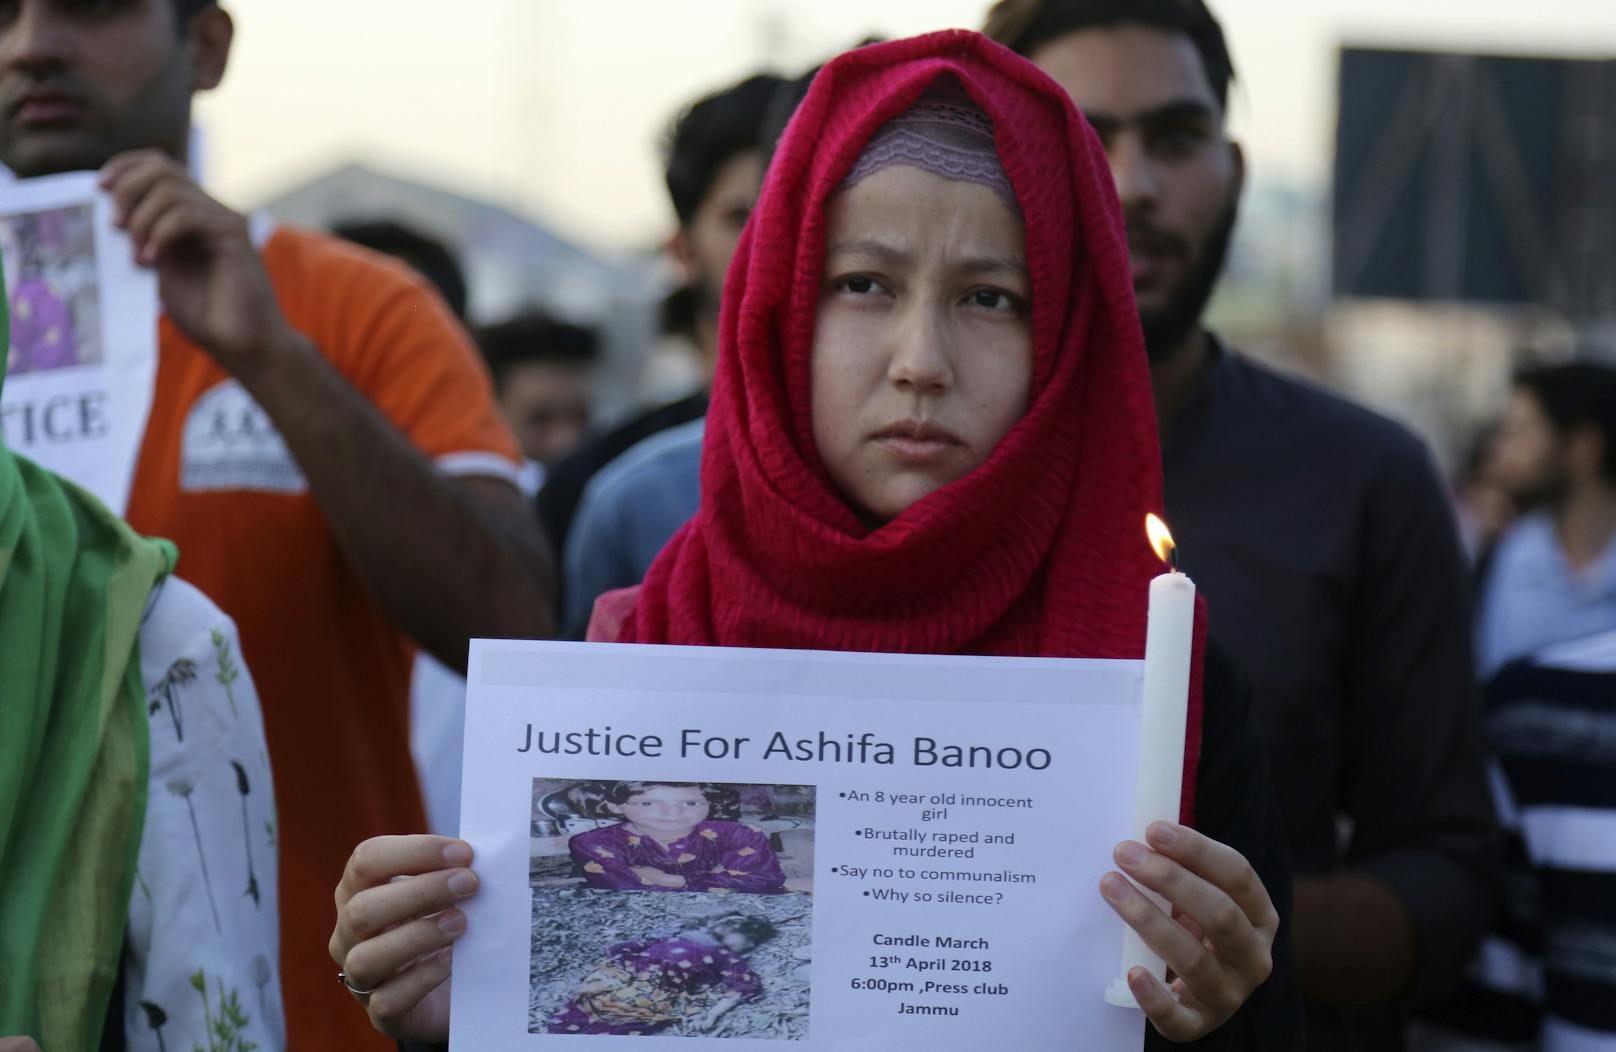 Schüler nehmen an einer Kerzenlichtprozession aus Protest gegen die Vergewaltigung und Ermordung der 8-Jährigen teil.